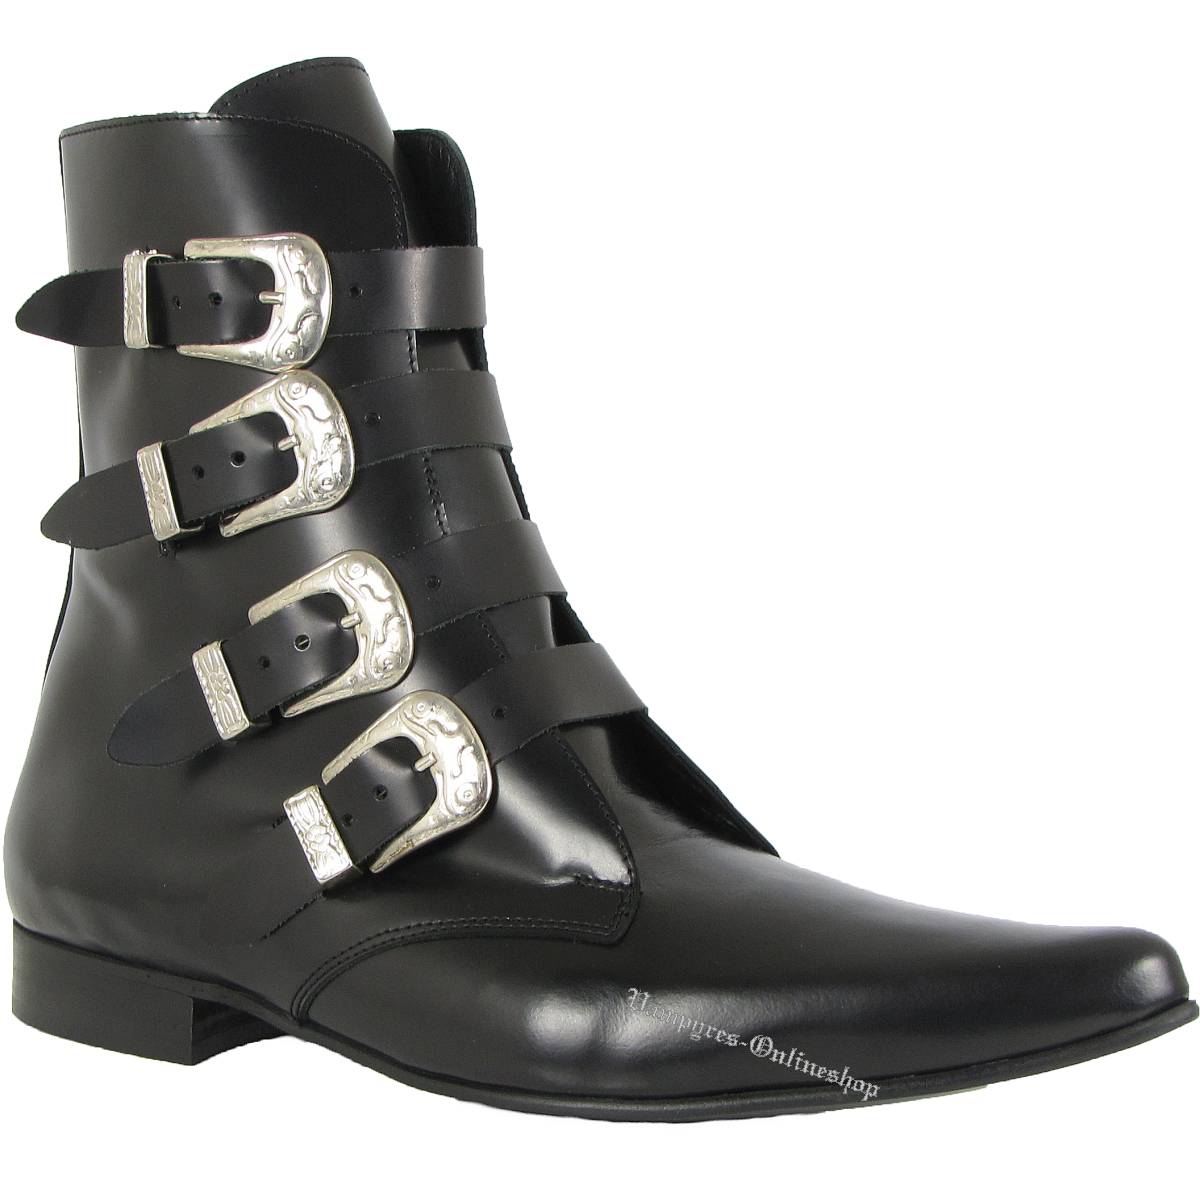 Boots and Braces Winkelpiker Classic Schwarz Leder Schuhe Pikes Halbschuhe Neu 